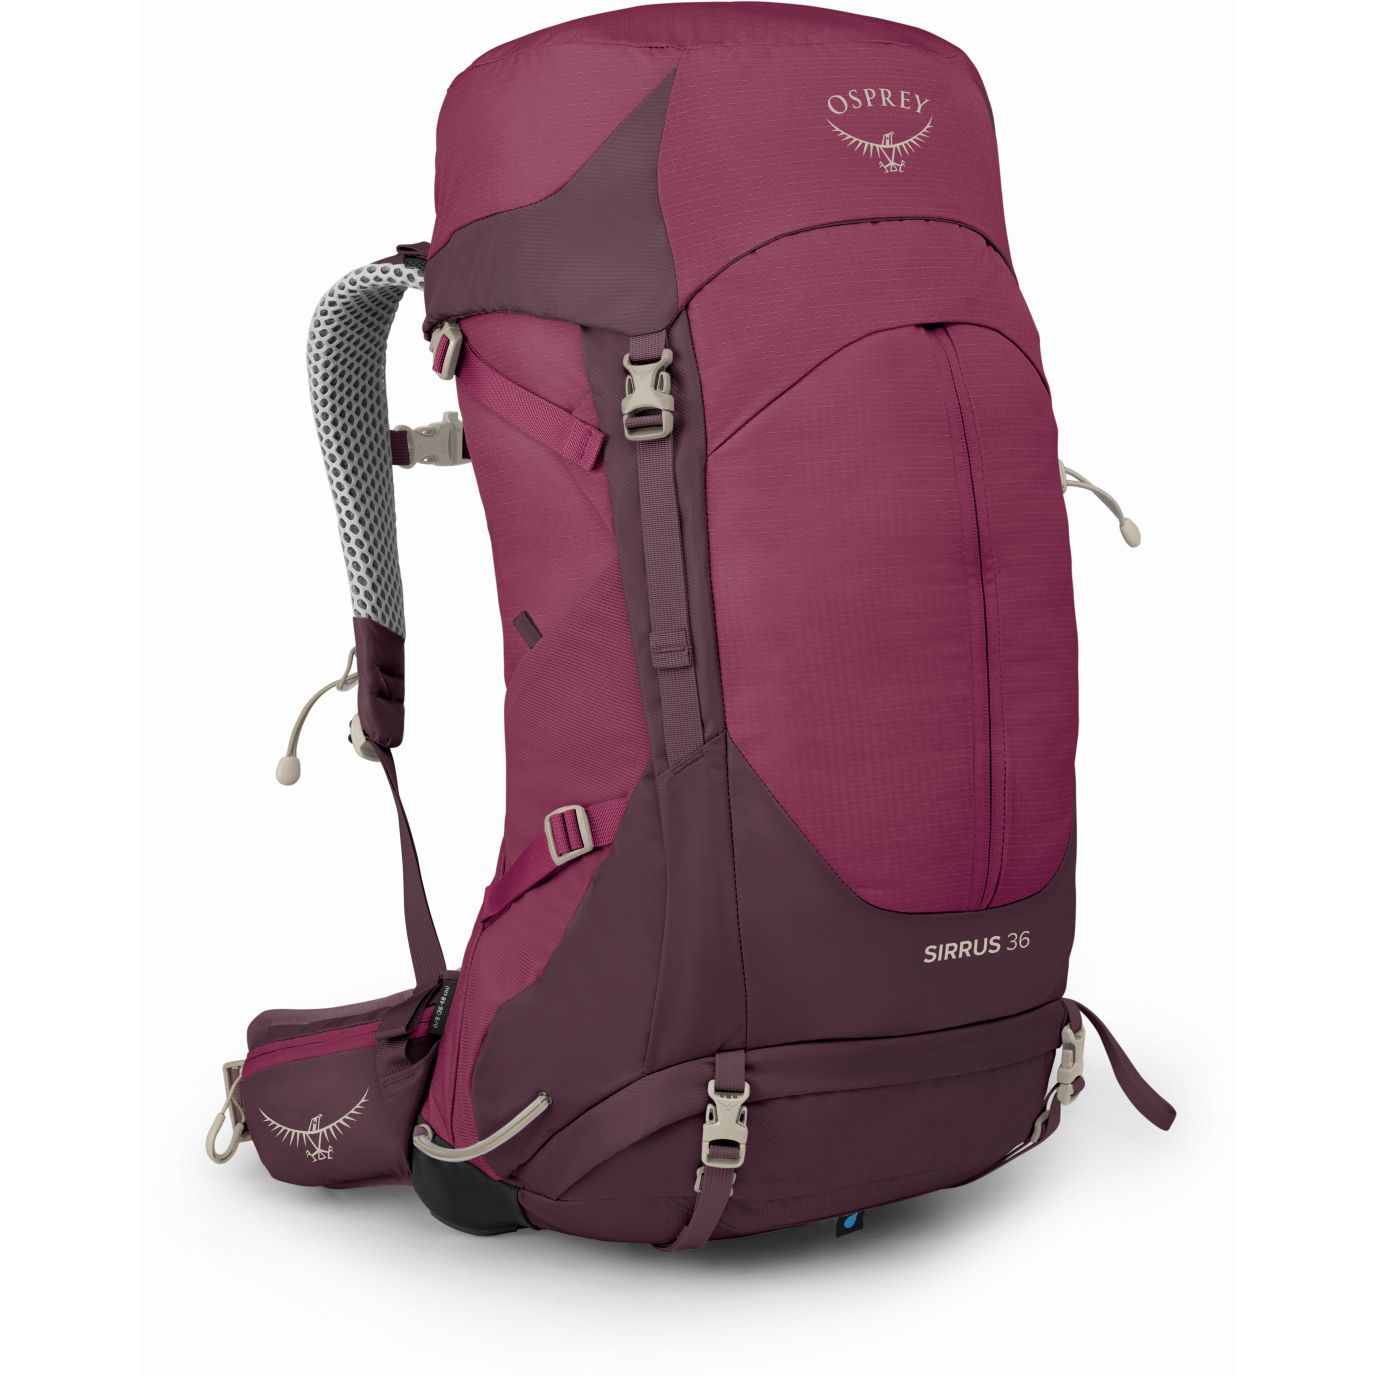 Produktbild von Osprey Sirrus 36 Rucksack Damen - Elderberry Purple/Chiru Tan